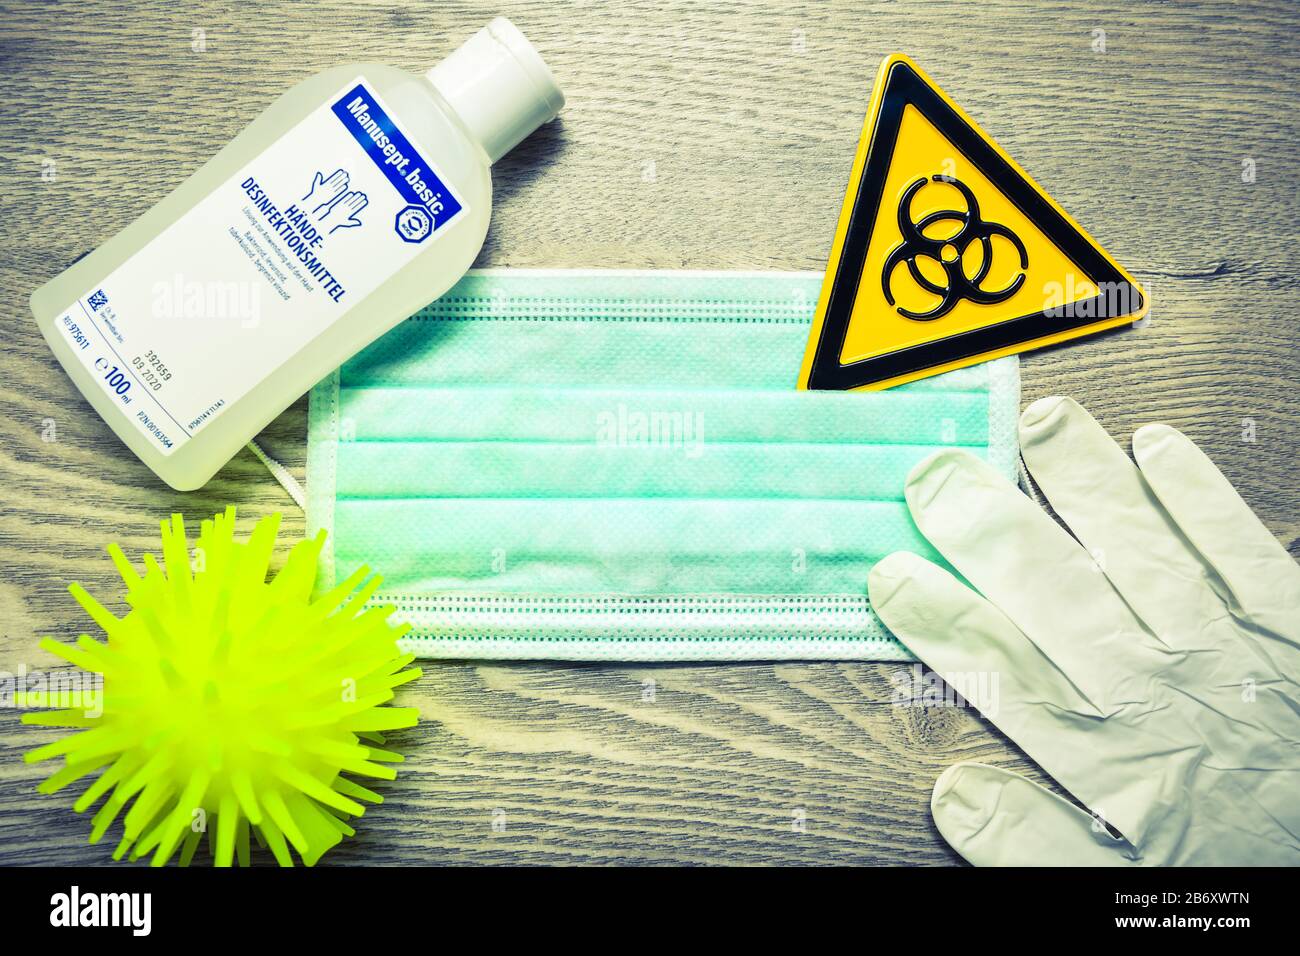 Mundschutz, Biogefaehrdungsschild, Schutzhandschuhe und Desinfektionsmittel auf einem Tisch, Symbolfoto Coronavirus Banque D'Images